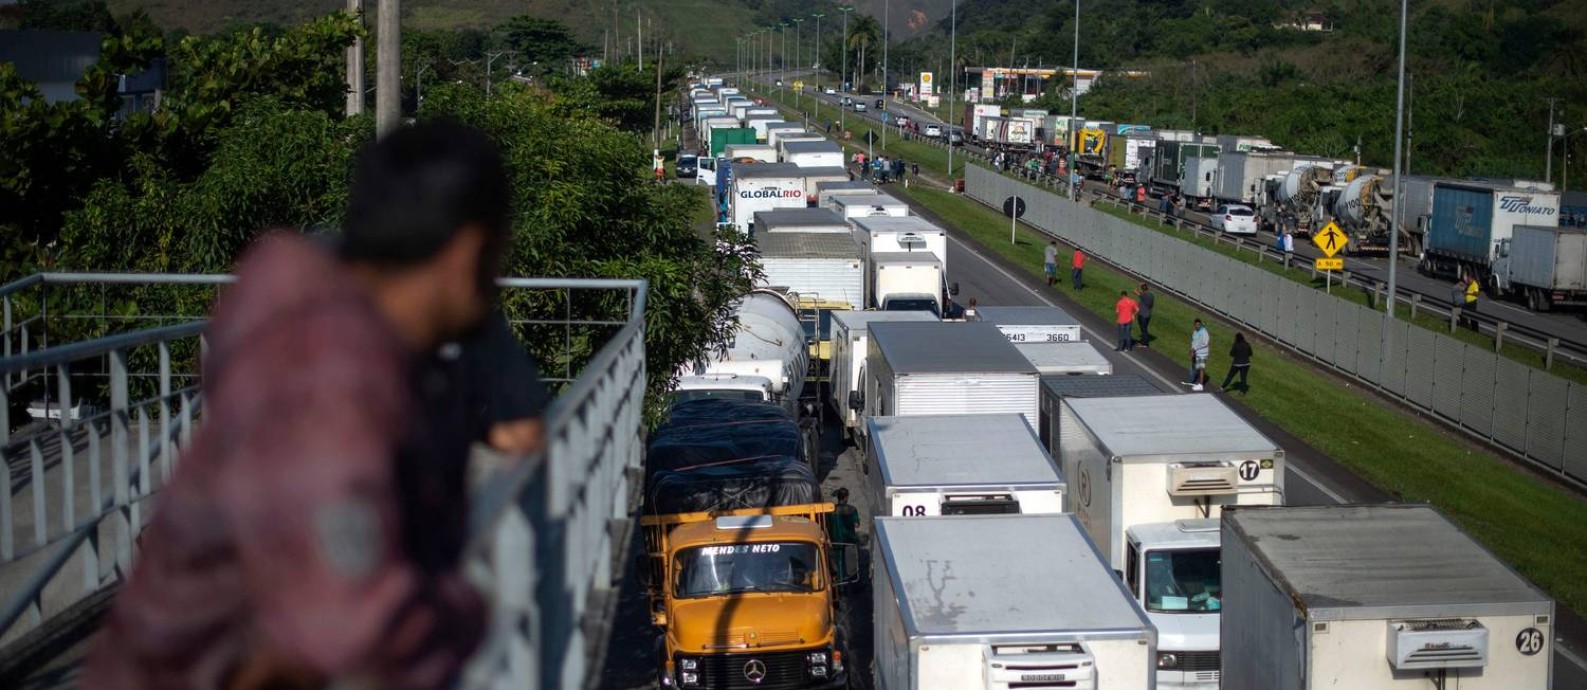 Caminhoneiros bloqueiam parcialmente a BR-116, perto de Magé, no Rio. Foto: Mauro Pimentel / AFP